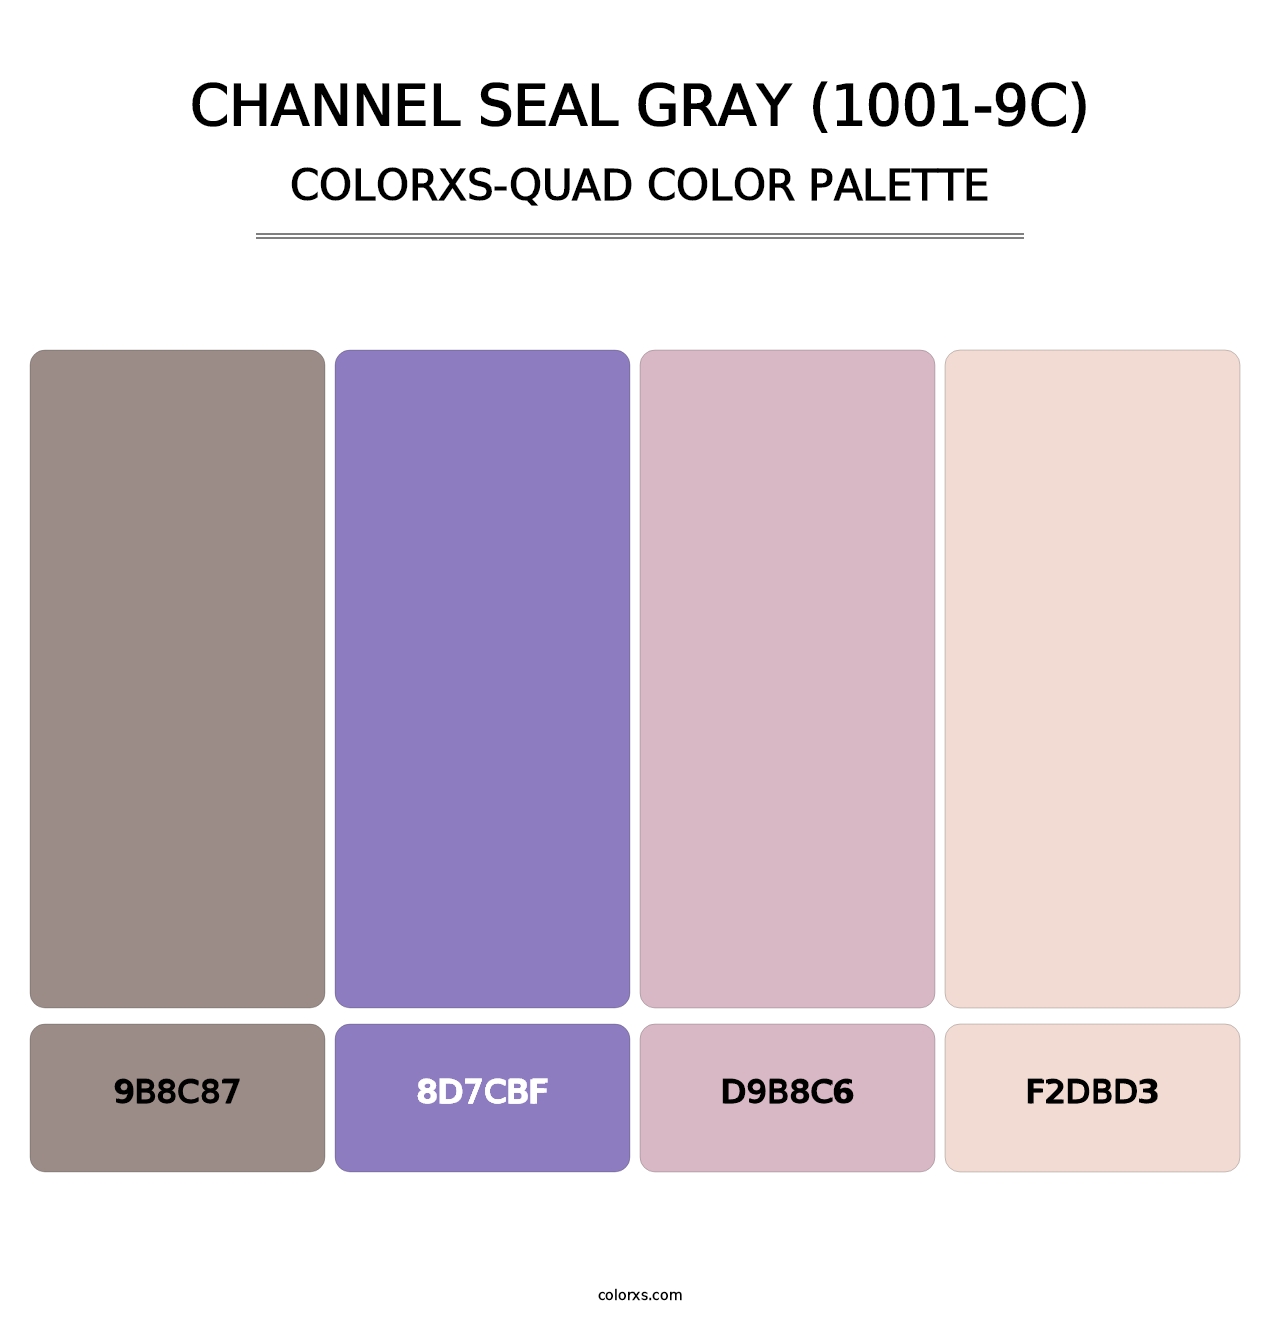 Channel Seal Gray (1001-9C) - Colorxs Quad Palette